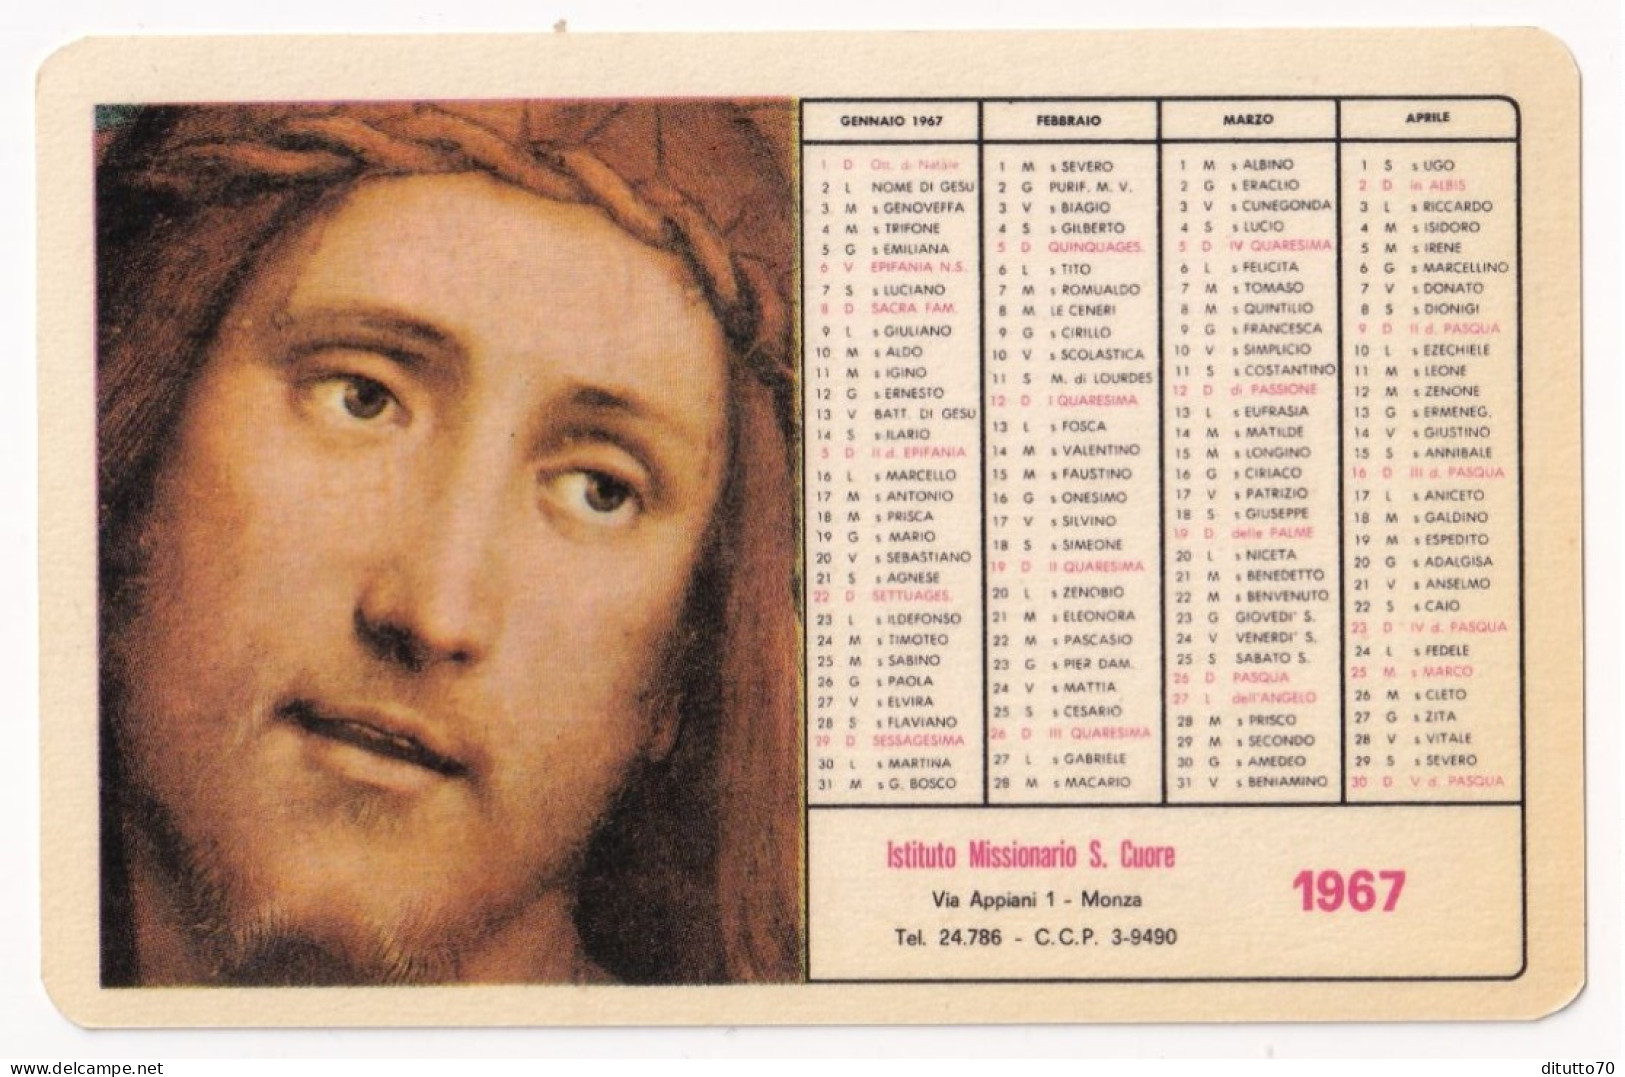 Calendarietto - Istituto Missionario S.cuore - Monza - Anno 1967 - Kleinformat : 1961-70